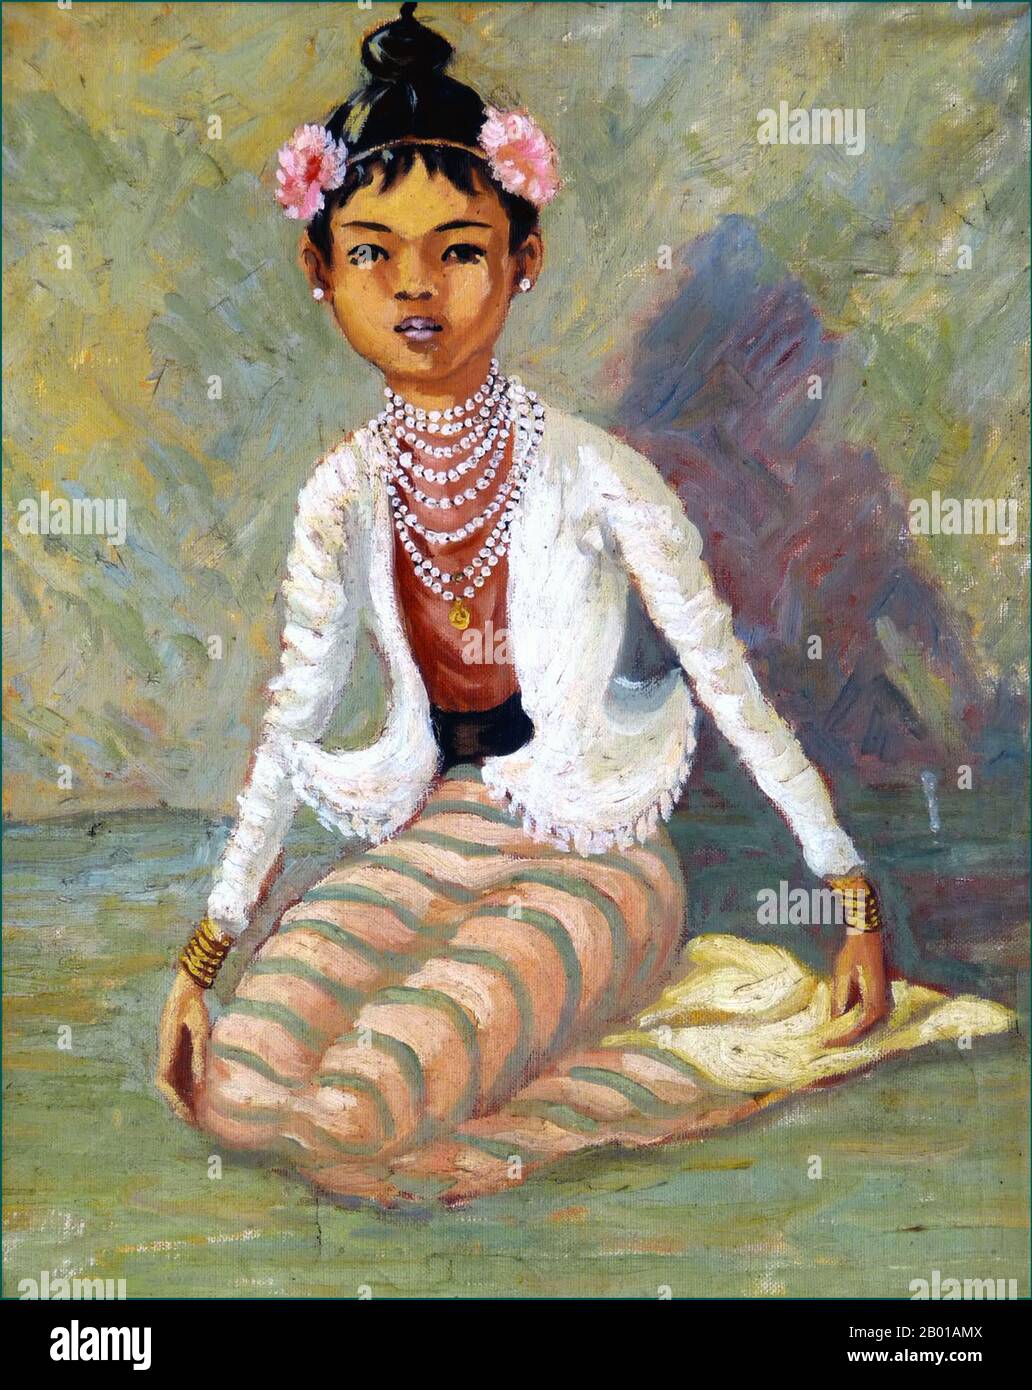 Burma/Myanmar: Junge Burma in longyi mit Blumen im Haar. Kolonialzeit Malerei, c. 1910. Ein longyi ist ein Tuch, das in Burma weit verbreitet ist. Er ist etwa 2 m (6½ ft.) lang und 80 cm (2½ ft.) breit. Das Tuch ist oft in zylindrischer Form genäht. Es wird um die Taille getragen und läuft bis zu den Füßen. Es wird durch Umklappen des Stoffes, ohne Knoten, an seinem Platz gehalten. Es ist auch manchmal bis zum Knie gefaltet für Komfort. Ähnliche Kleidungsstücke finden sich in Indien, Bangladesch, Sri Lanka, dem Malaiischen Archipel und Juiz de Fora. Stockfoto